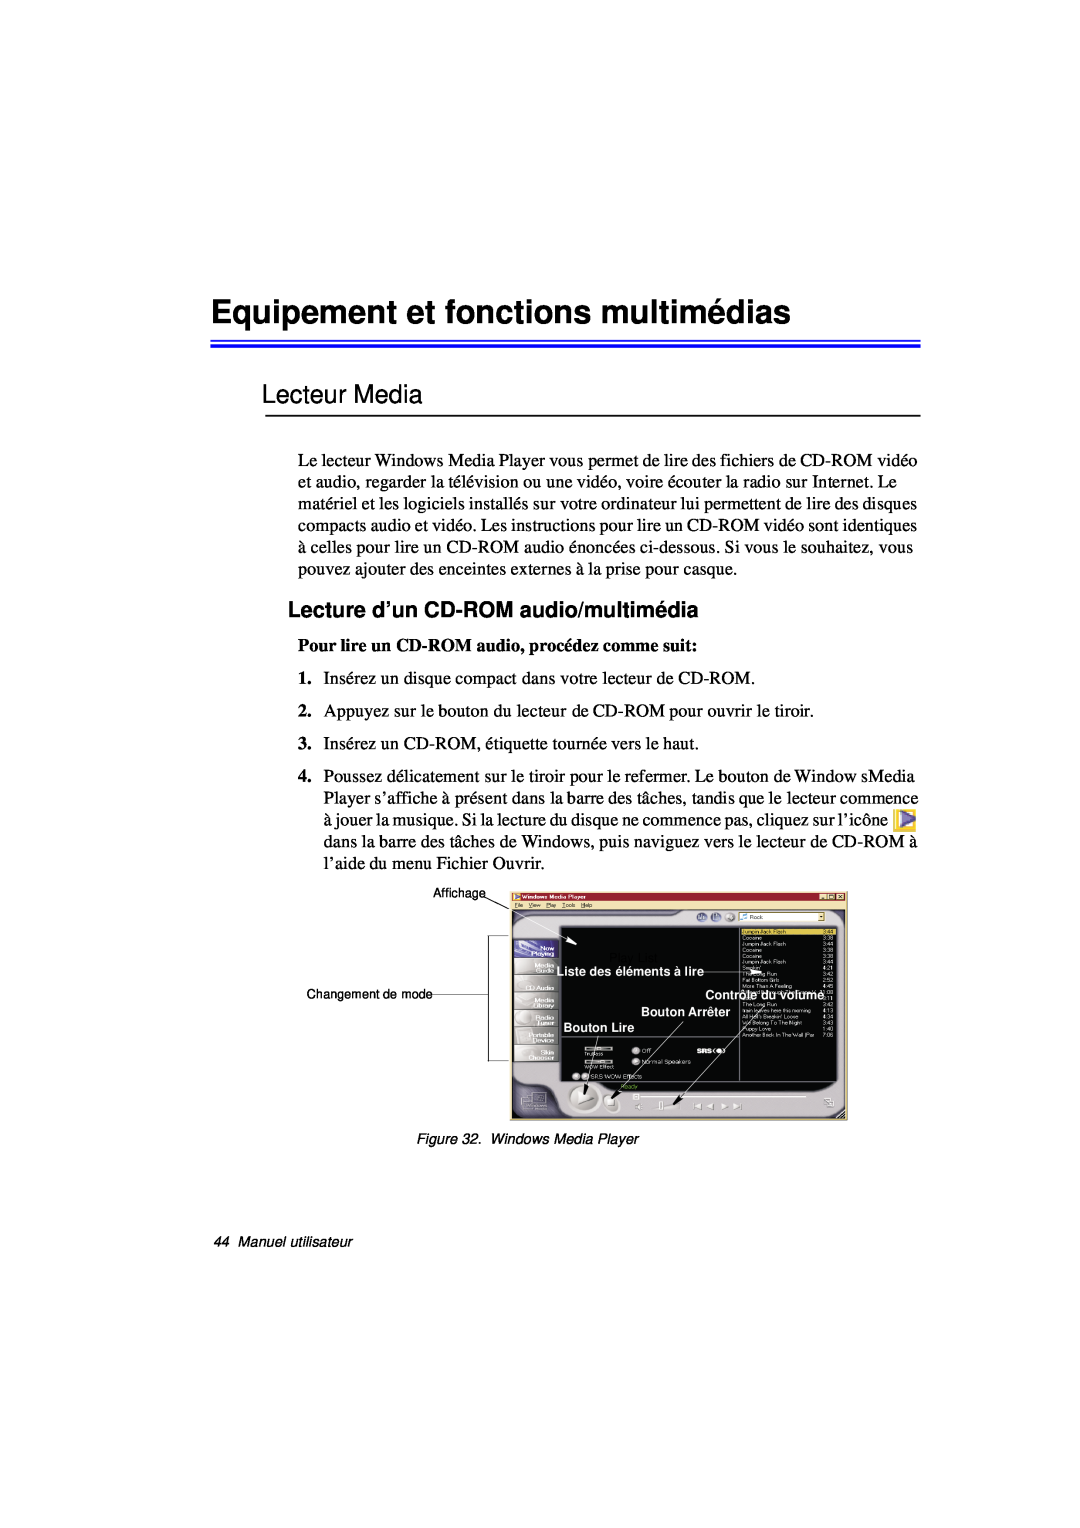 Samsung N760PJ2002/SEF manual Equipement et fonctions multimédias, Lecteur Media, Lecture d’un CD-ROM audio/multimédia 